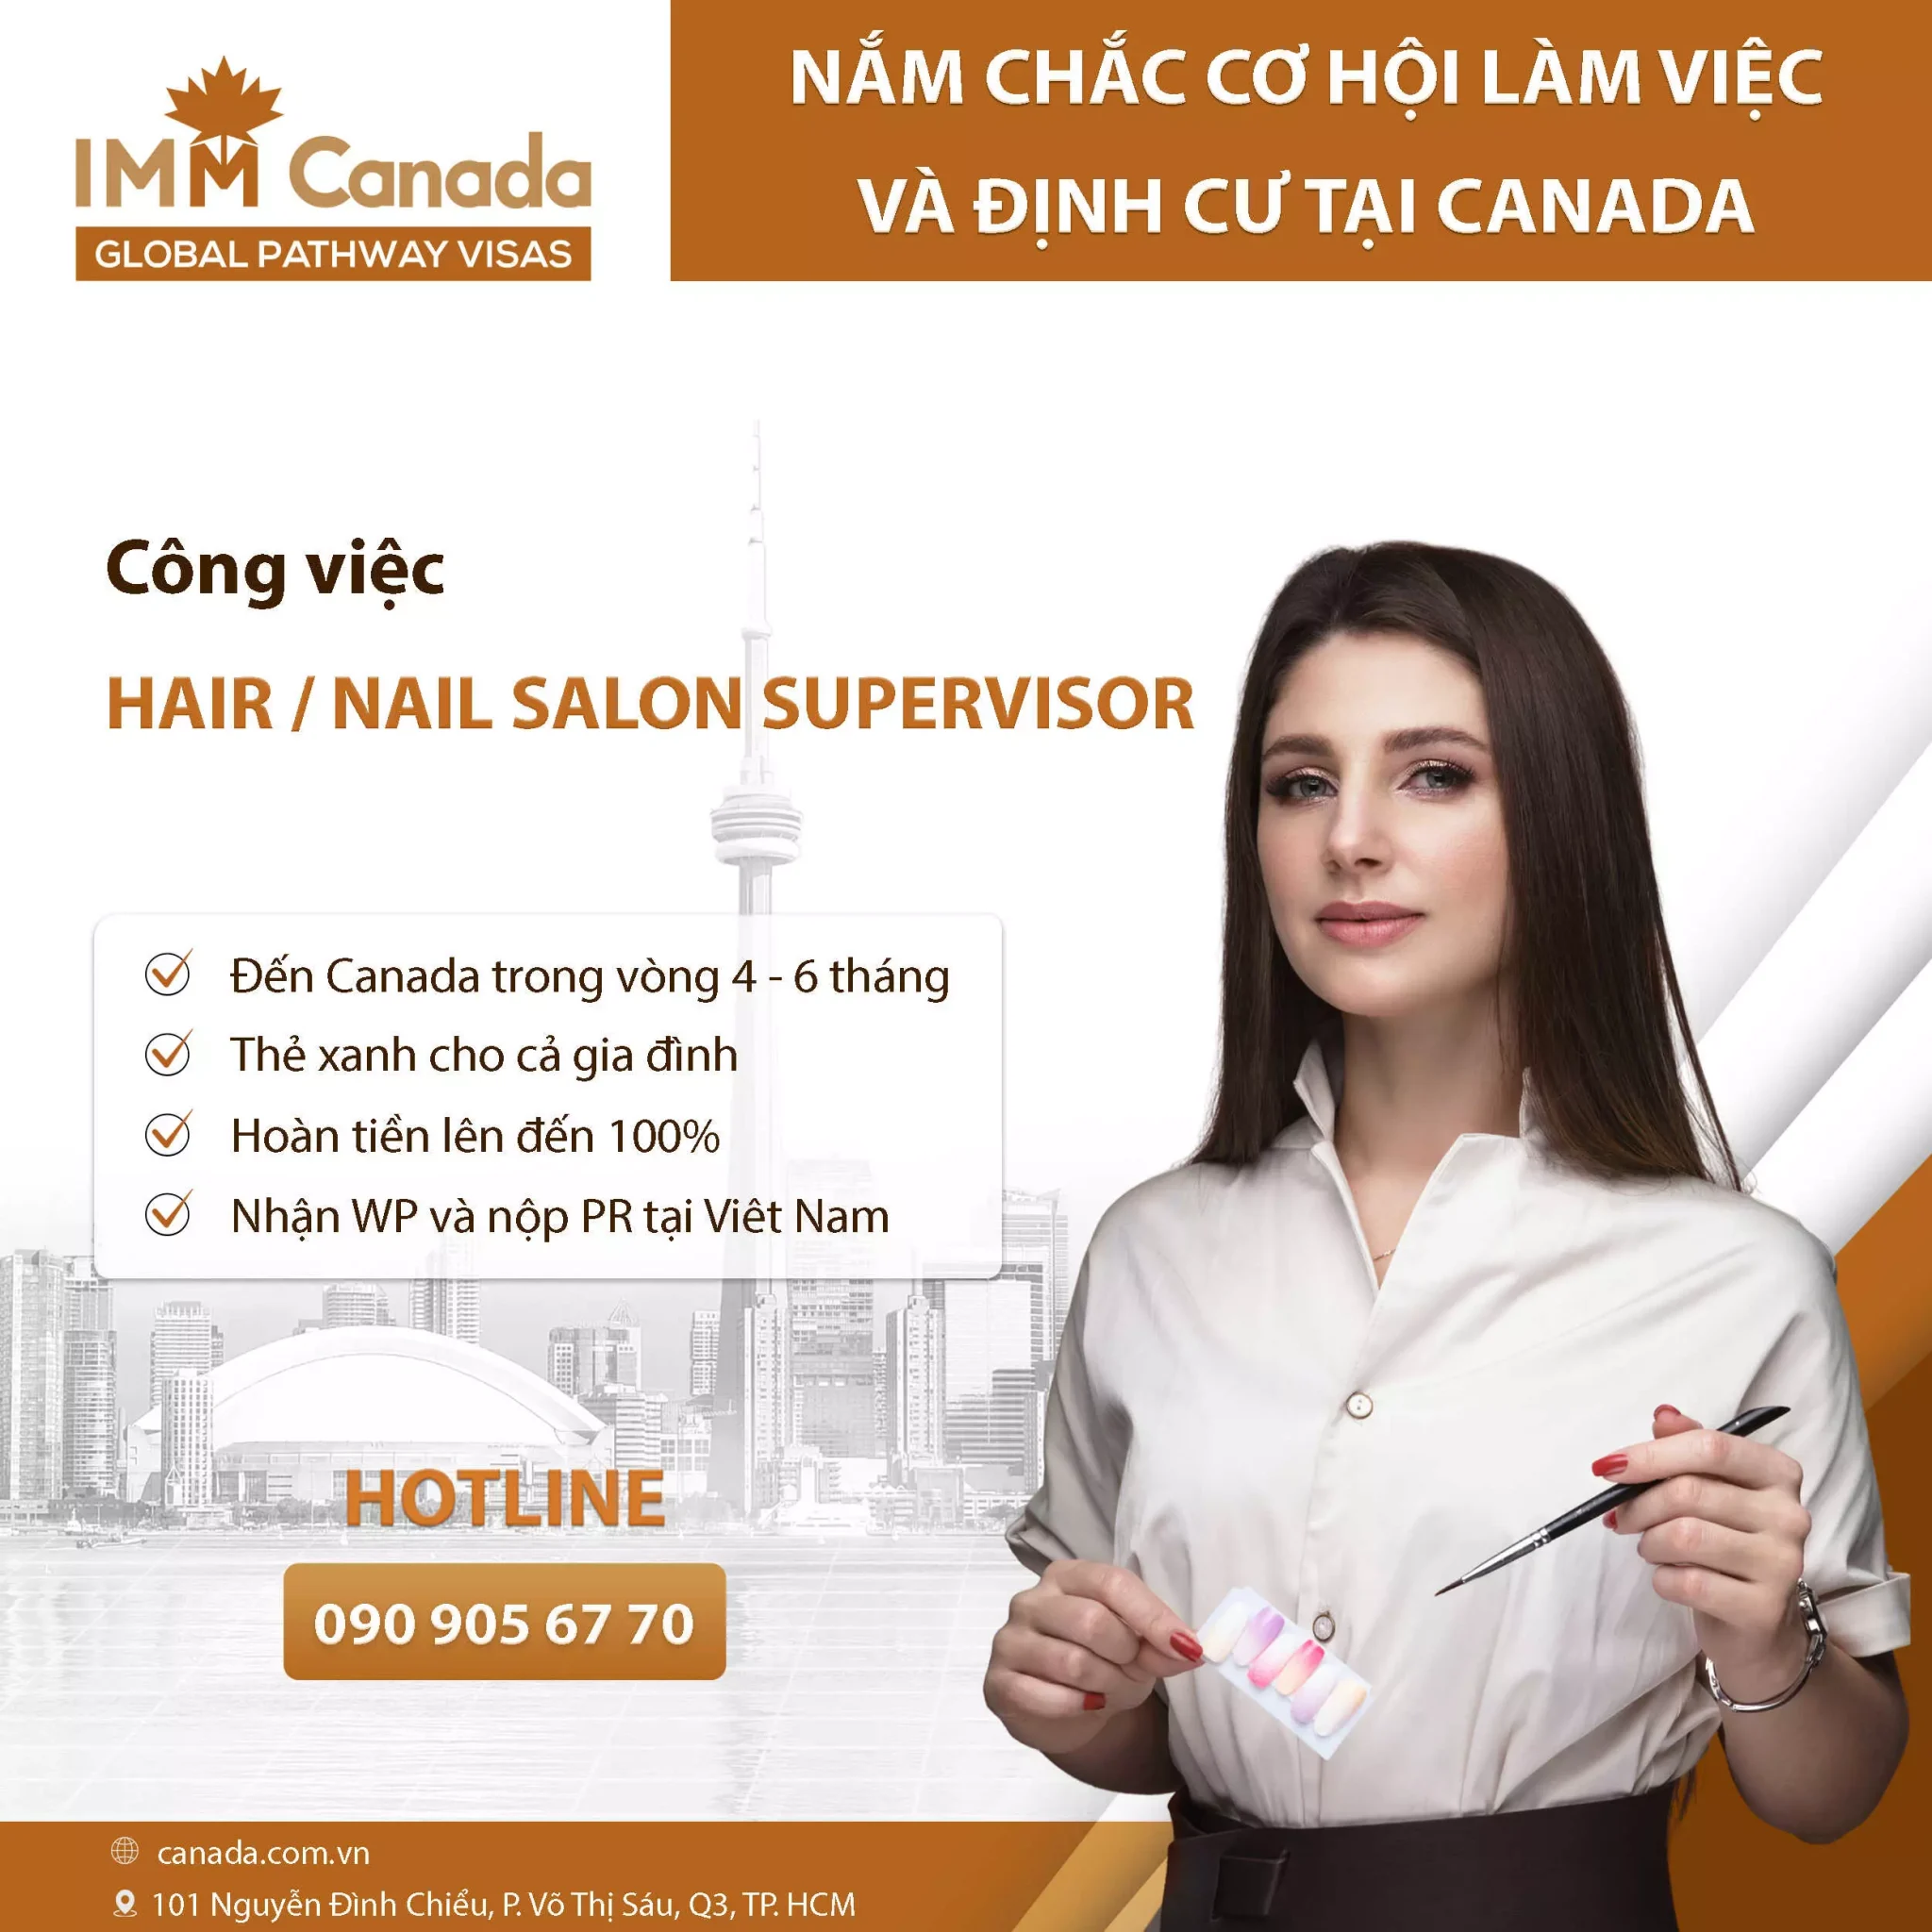 Cơ hội định cư Canada cho các ngành nghề dịch vụ Nail & Spa - Hair or Nail Salon Supervisor